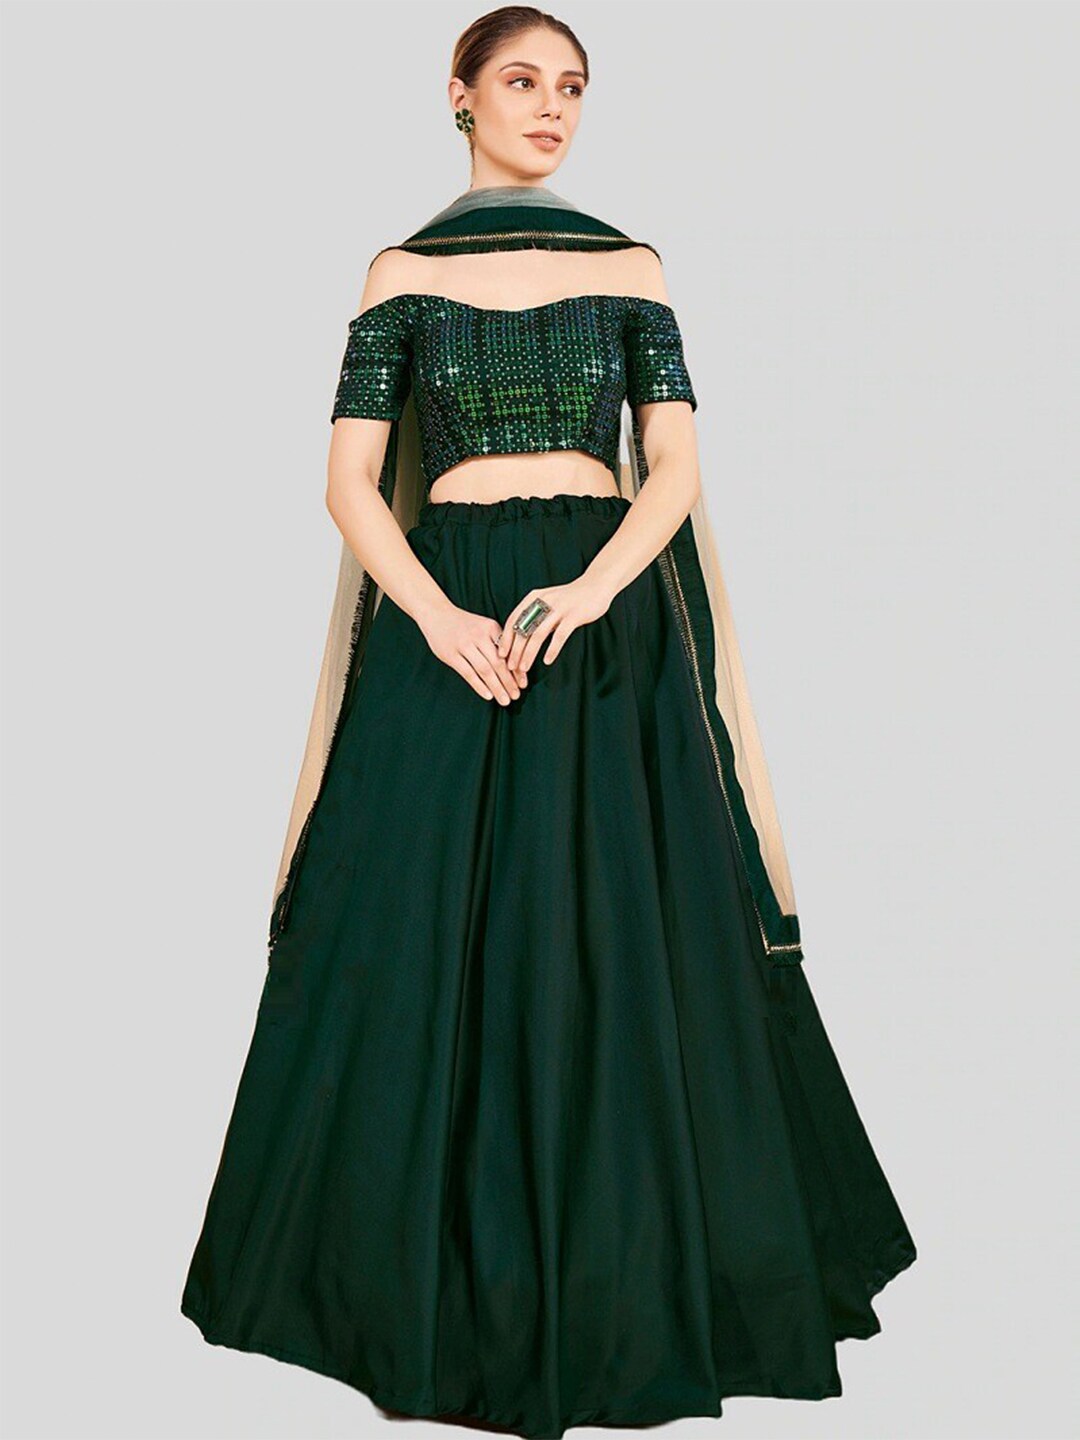 YOYO Fashion Embellished Sequinned Semi-Stitched Lehenga Choli With Dupatta Price in India